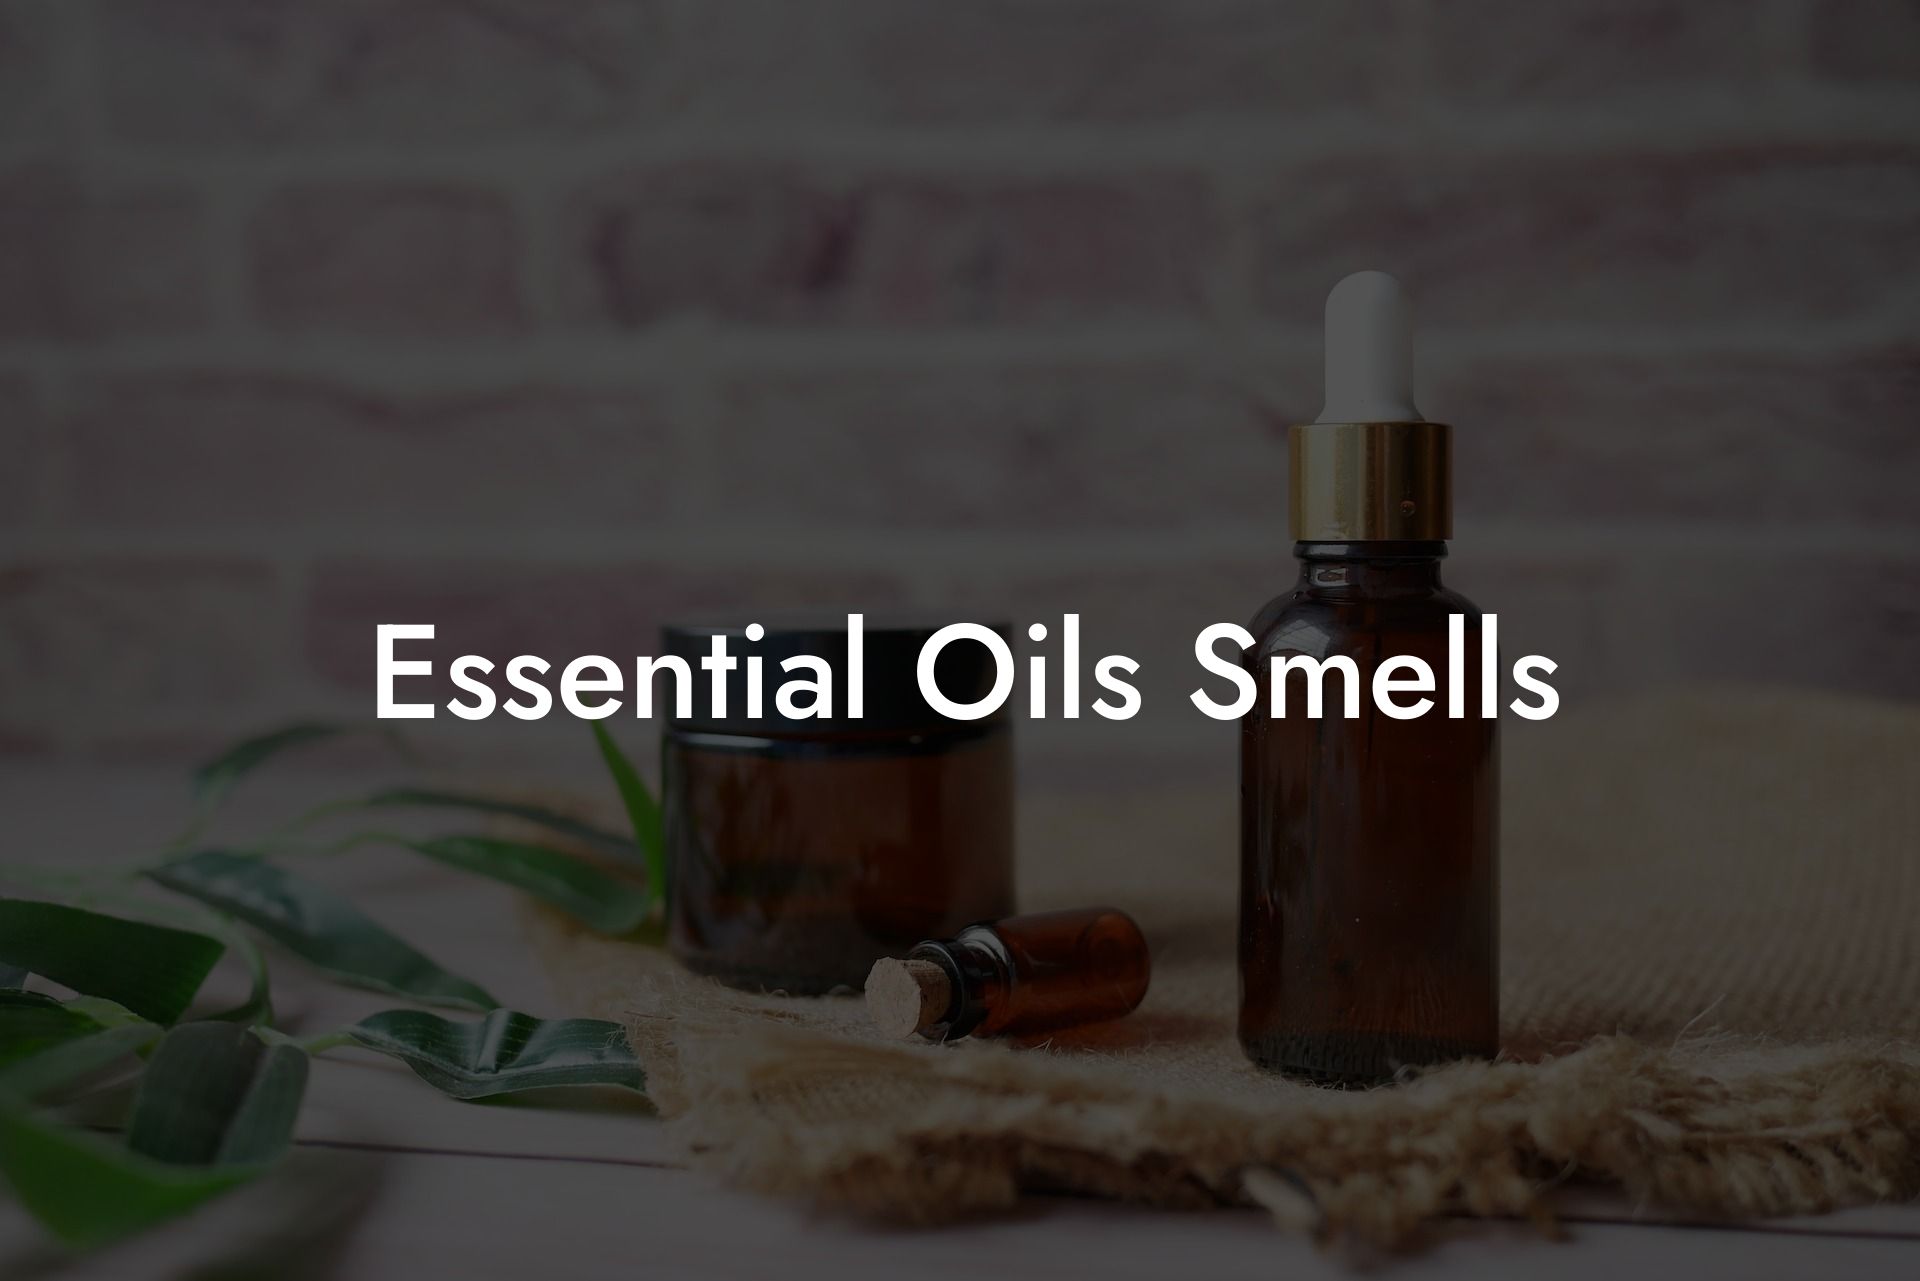 Essential Oils Smells